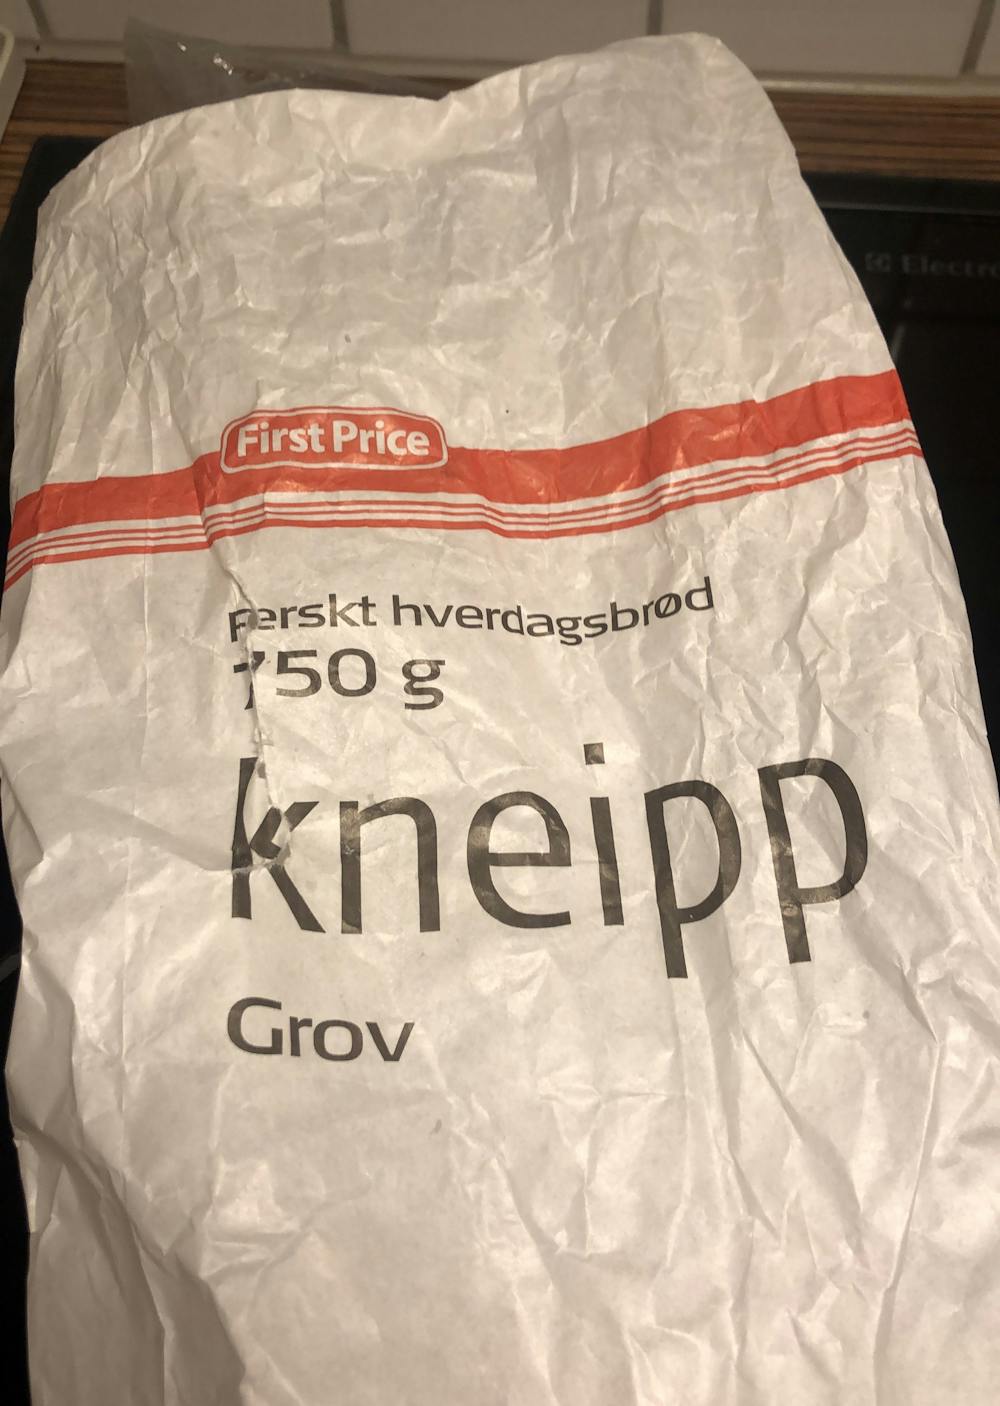 Kneipp grov, First Price